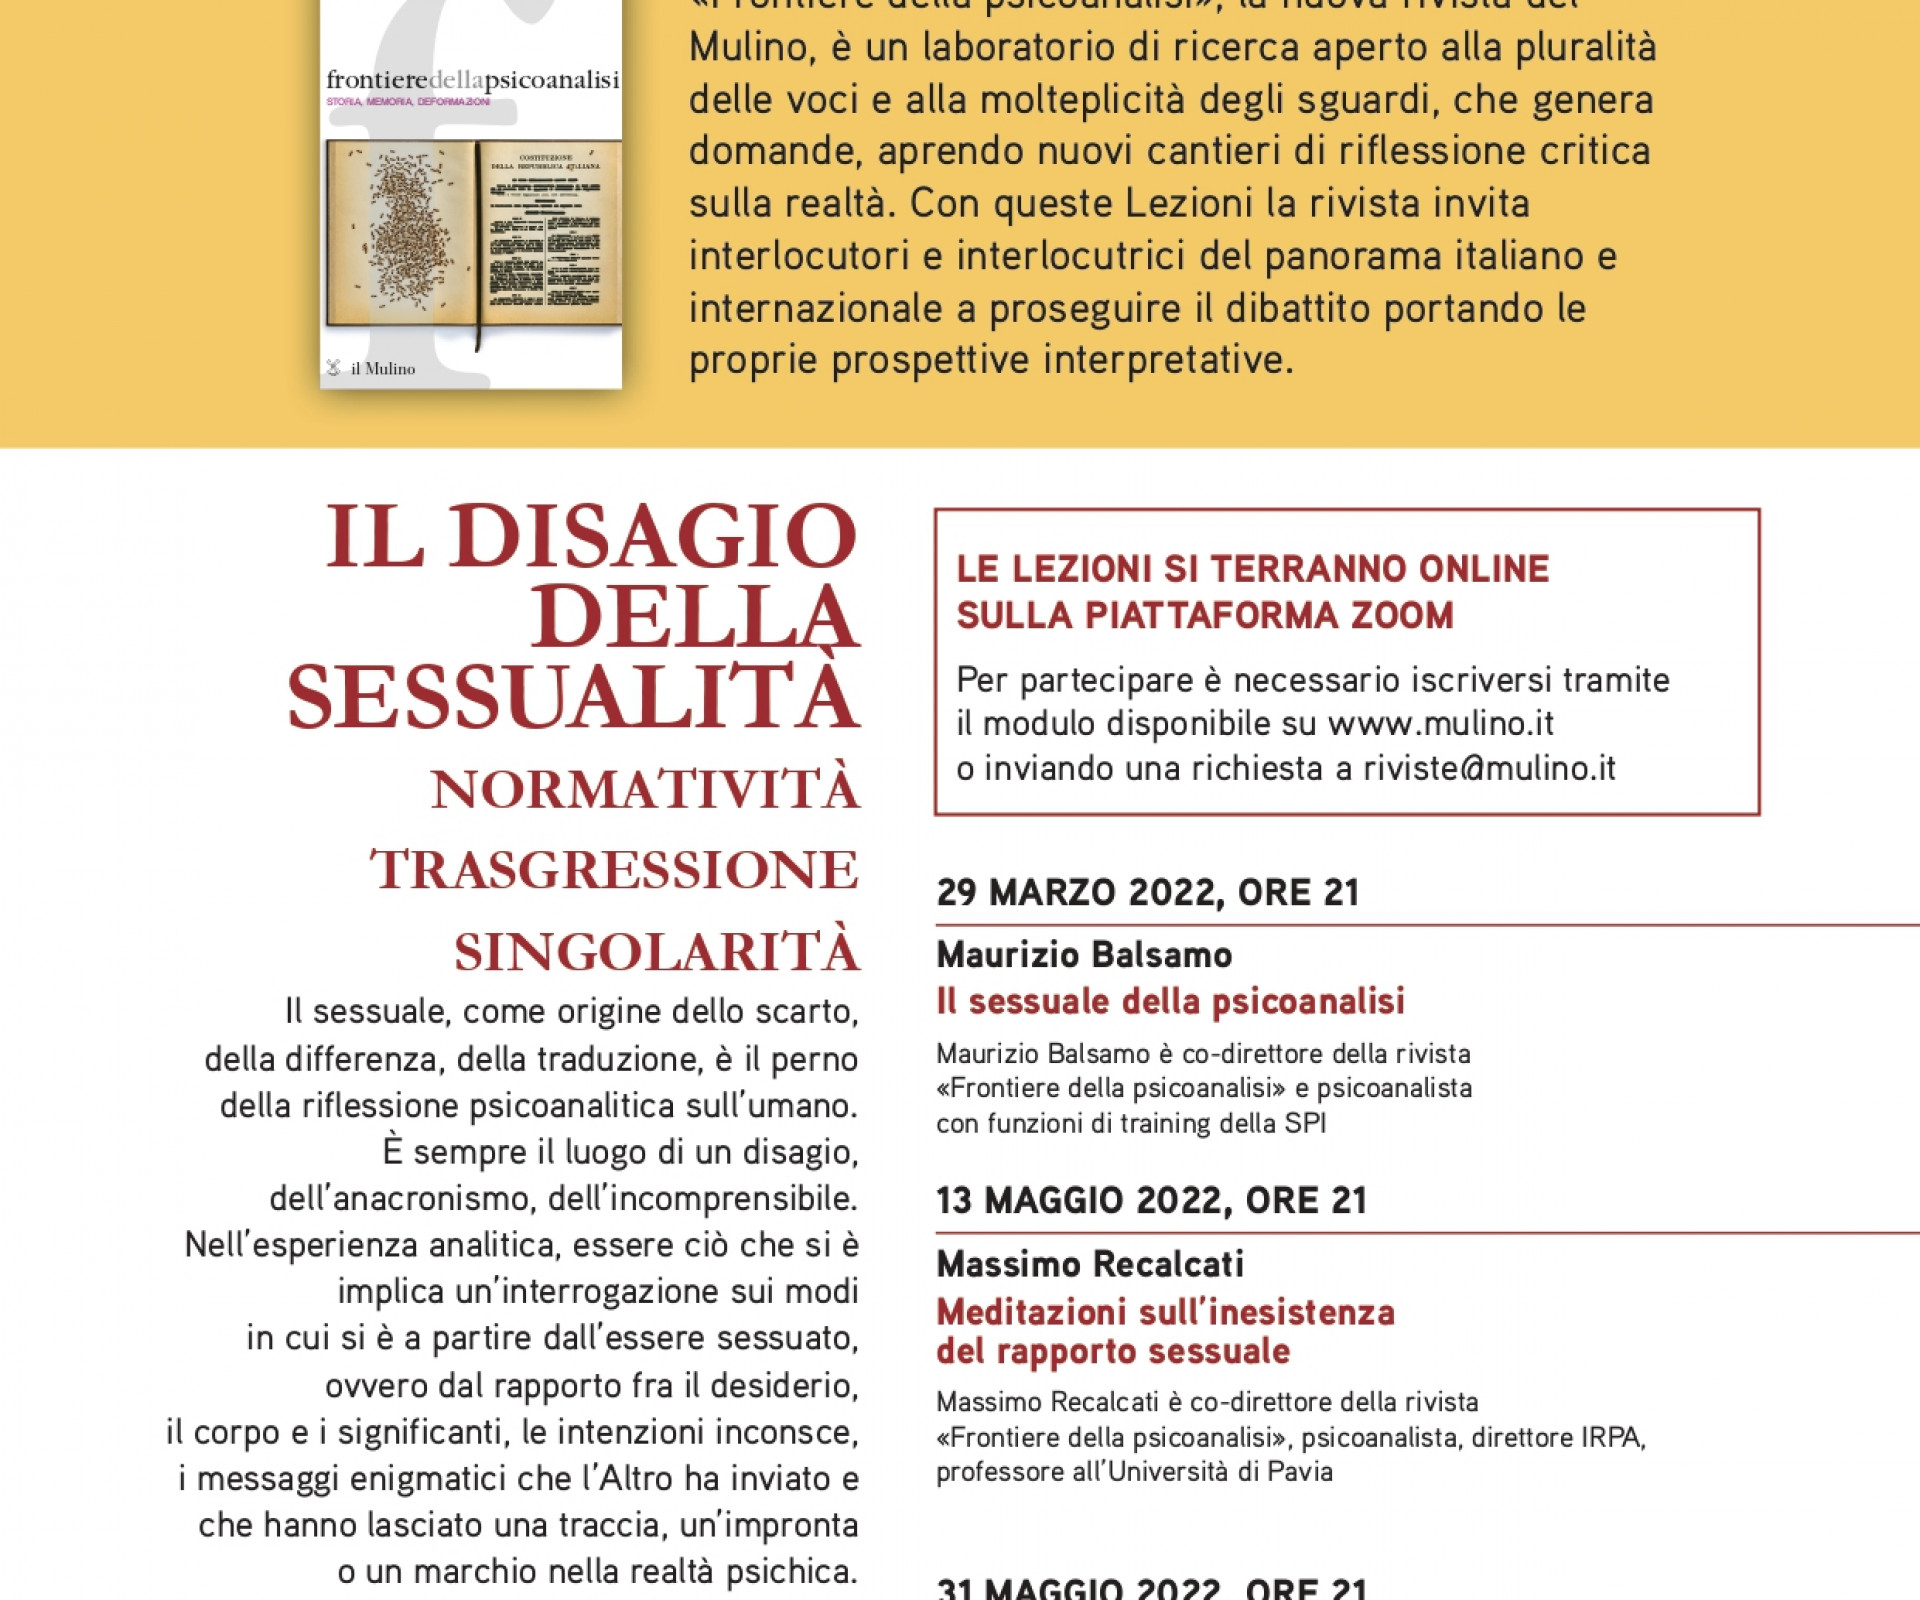 "Meditazioni sull'inesistenza del rapporto sessuale" con Massimo Recalcati  - 13 MAGGIO 2022, ORE 21